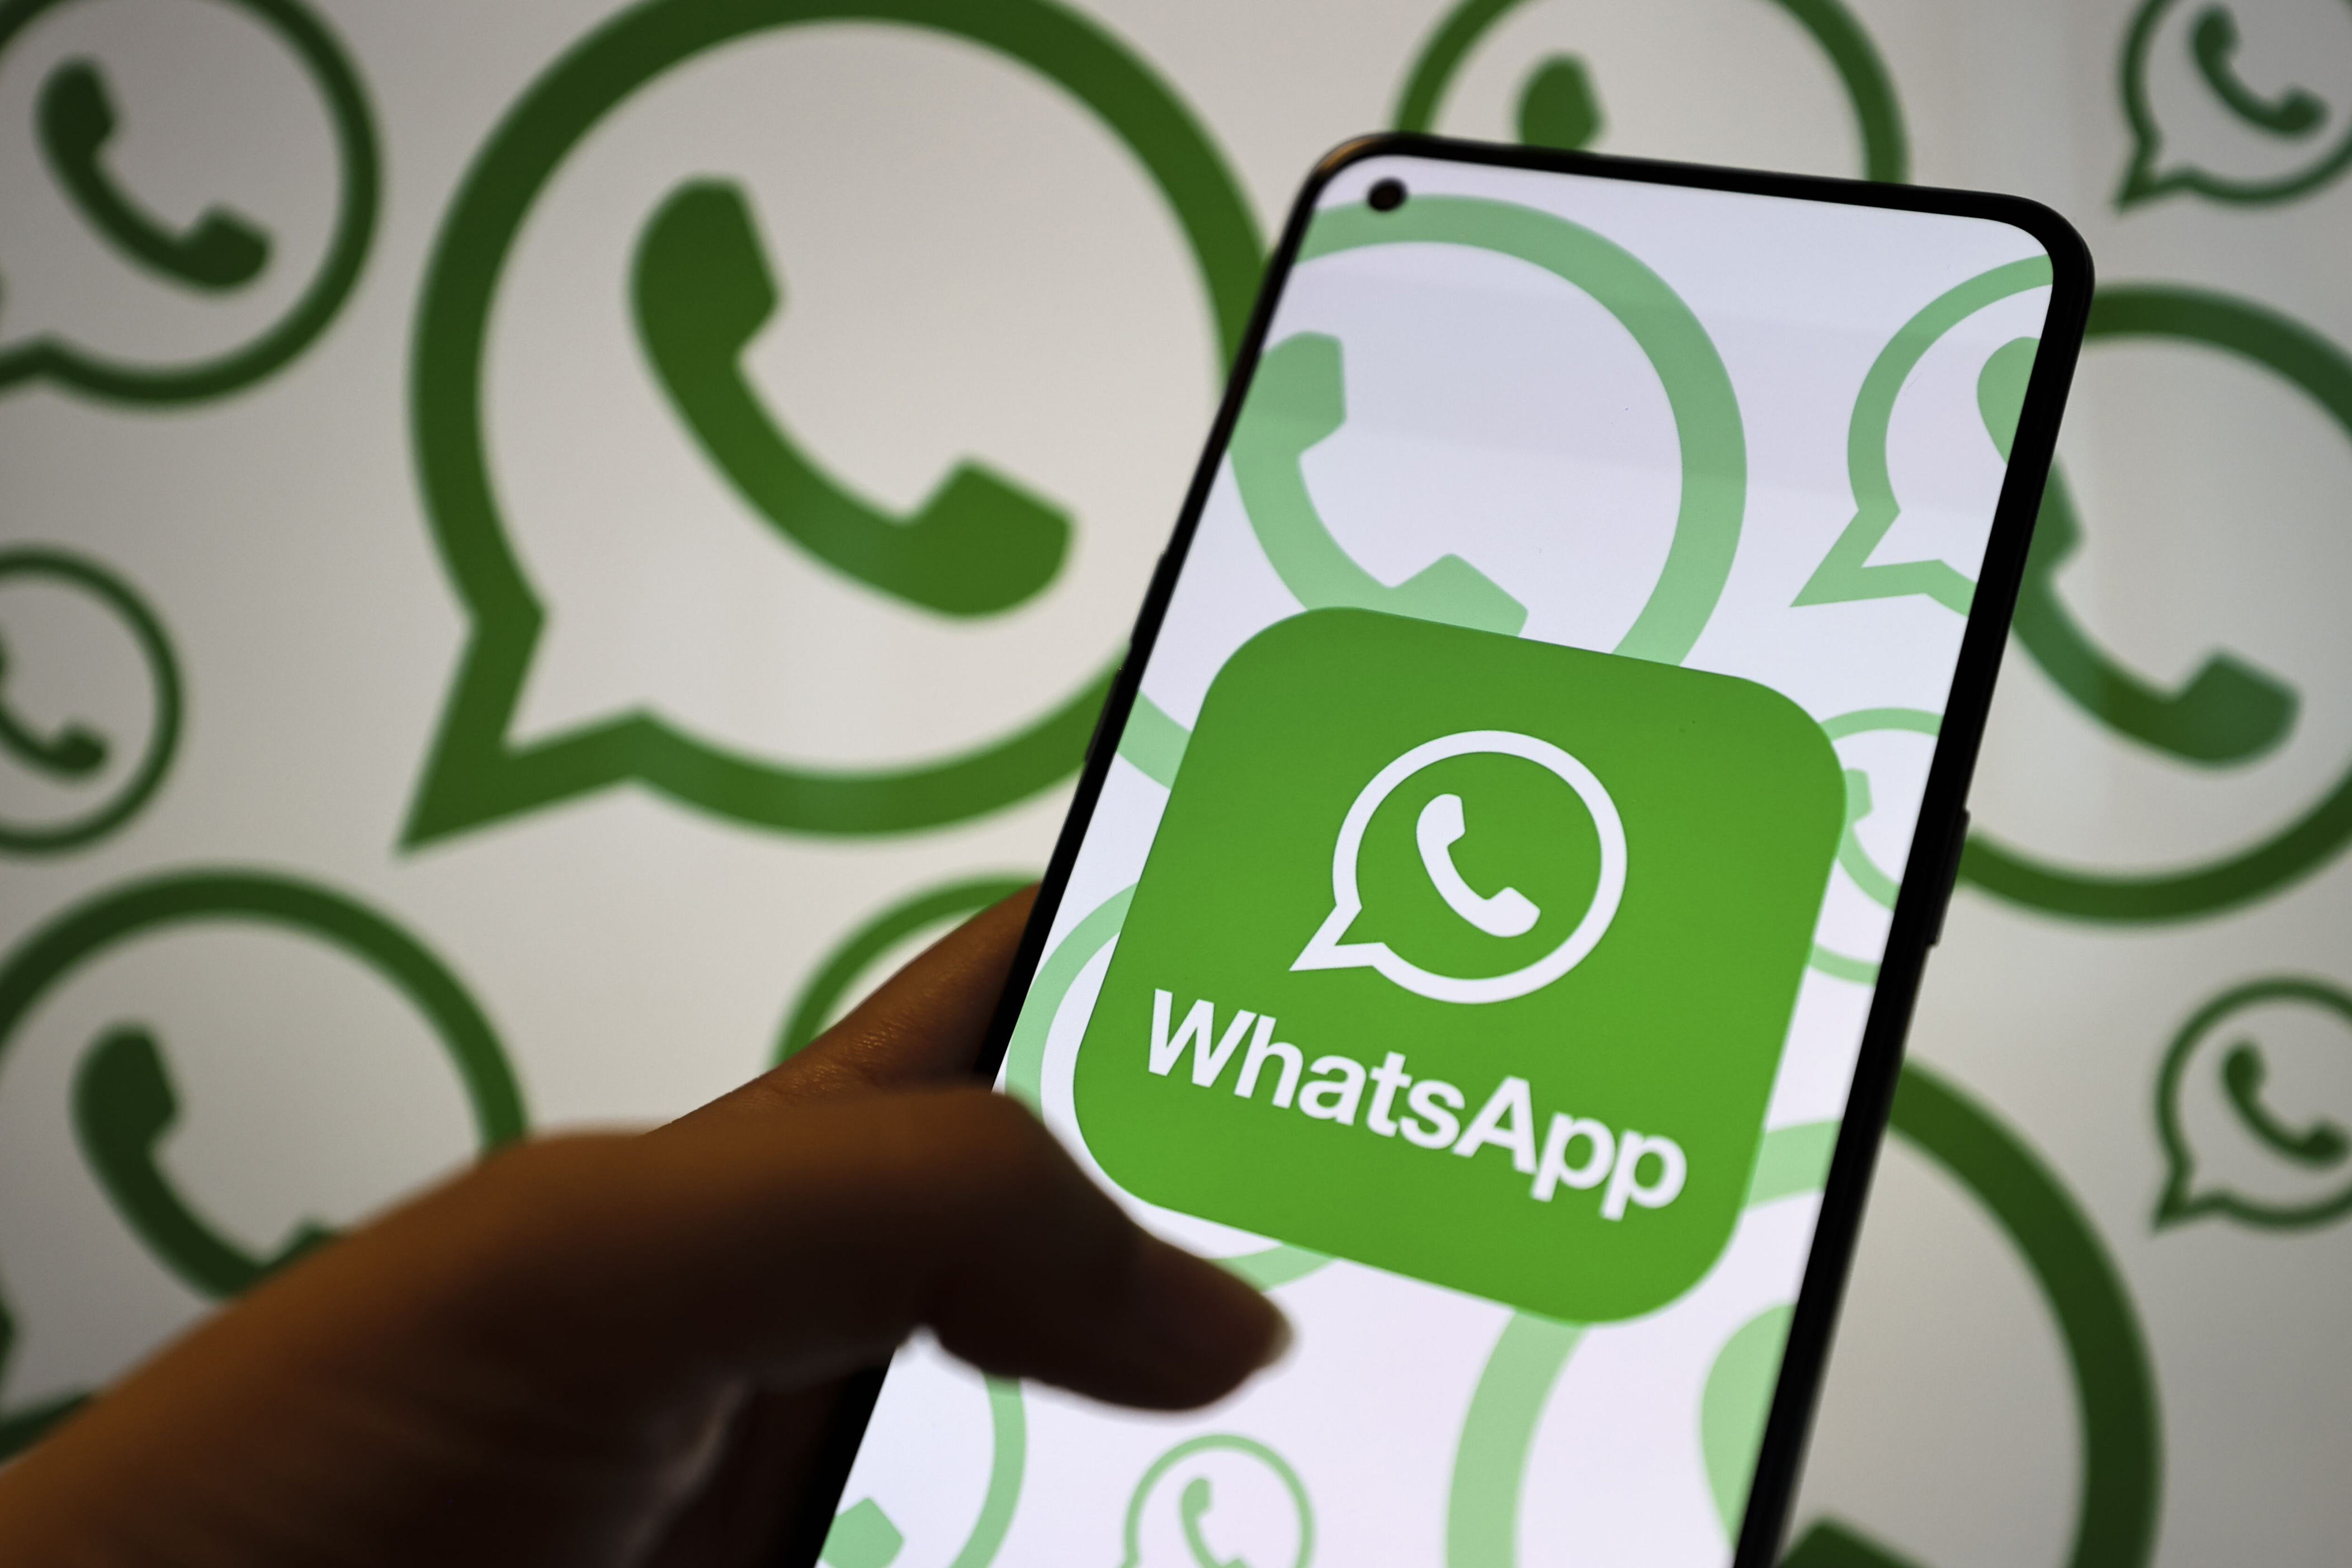 android, whatsapp alista una nueva forma para compartir fotos y videos en los chats; así funcionará esta novedad